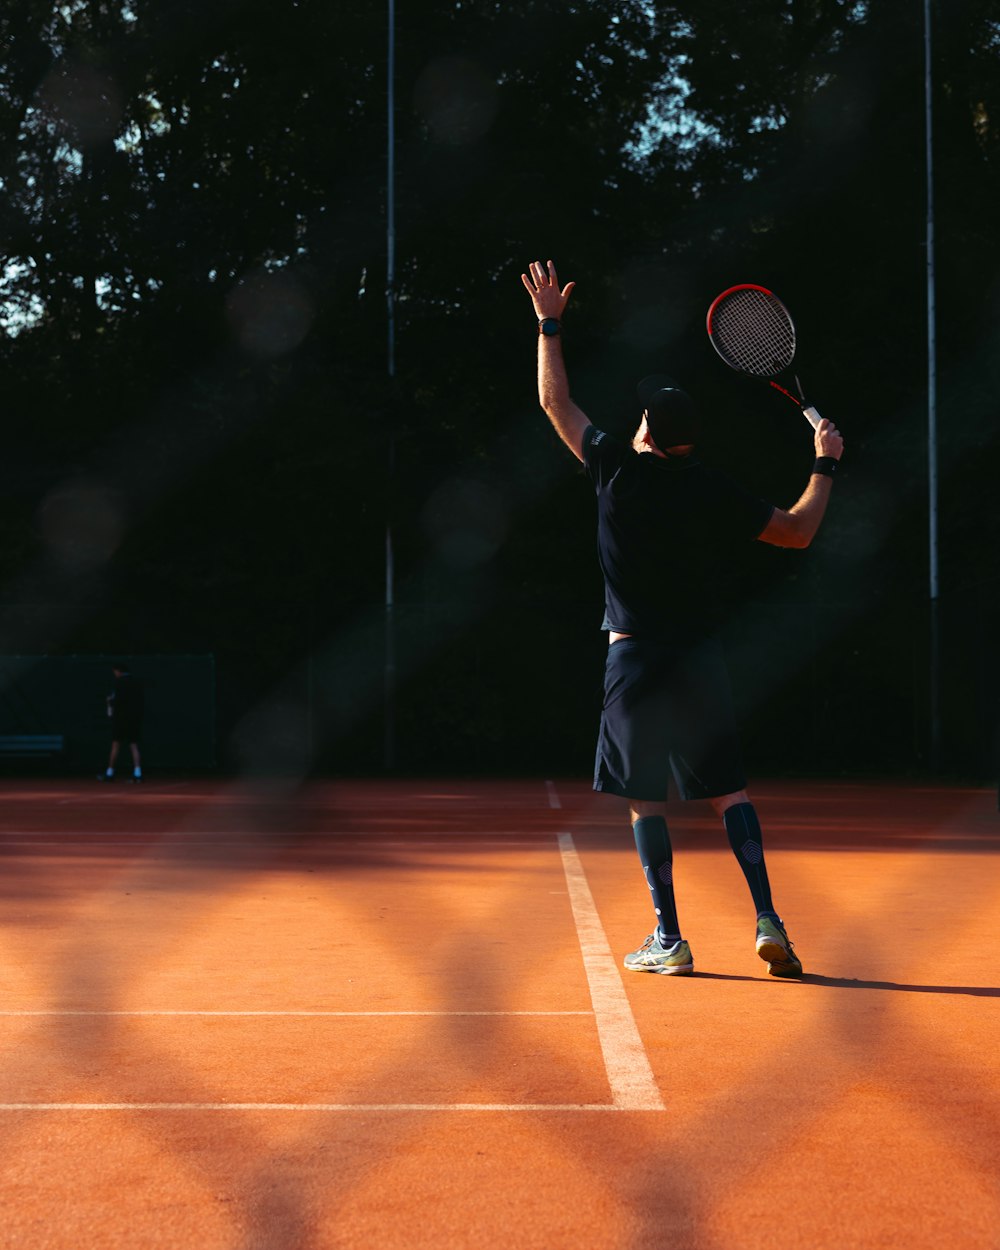 ein Mann hält einen Tennisschläger auf einem Tennisplatz